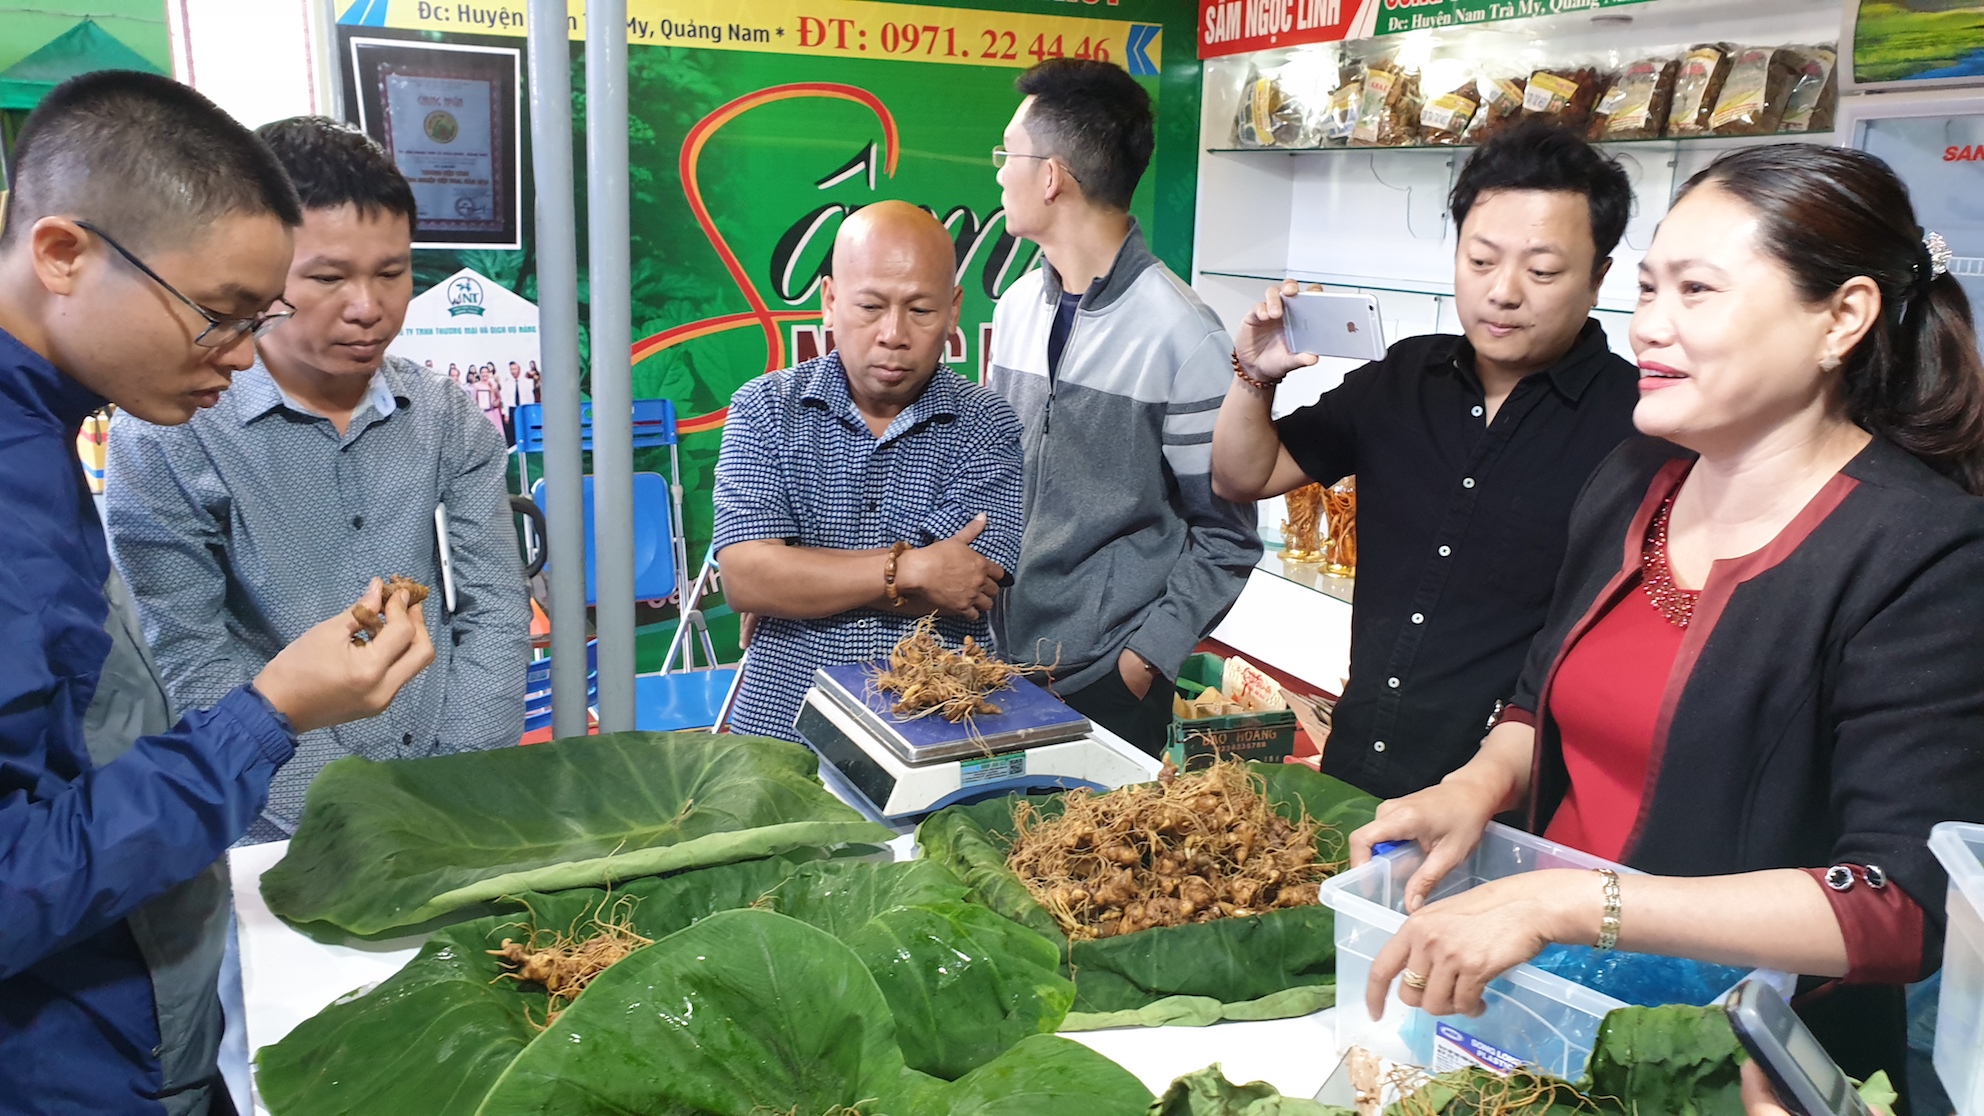 Sâm Ngọc Linh được Quảng Nam phát triển, trở thành cây dược liệu chủ yếu cho các huyện miền núi của tỉnh.